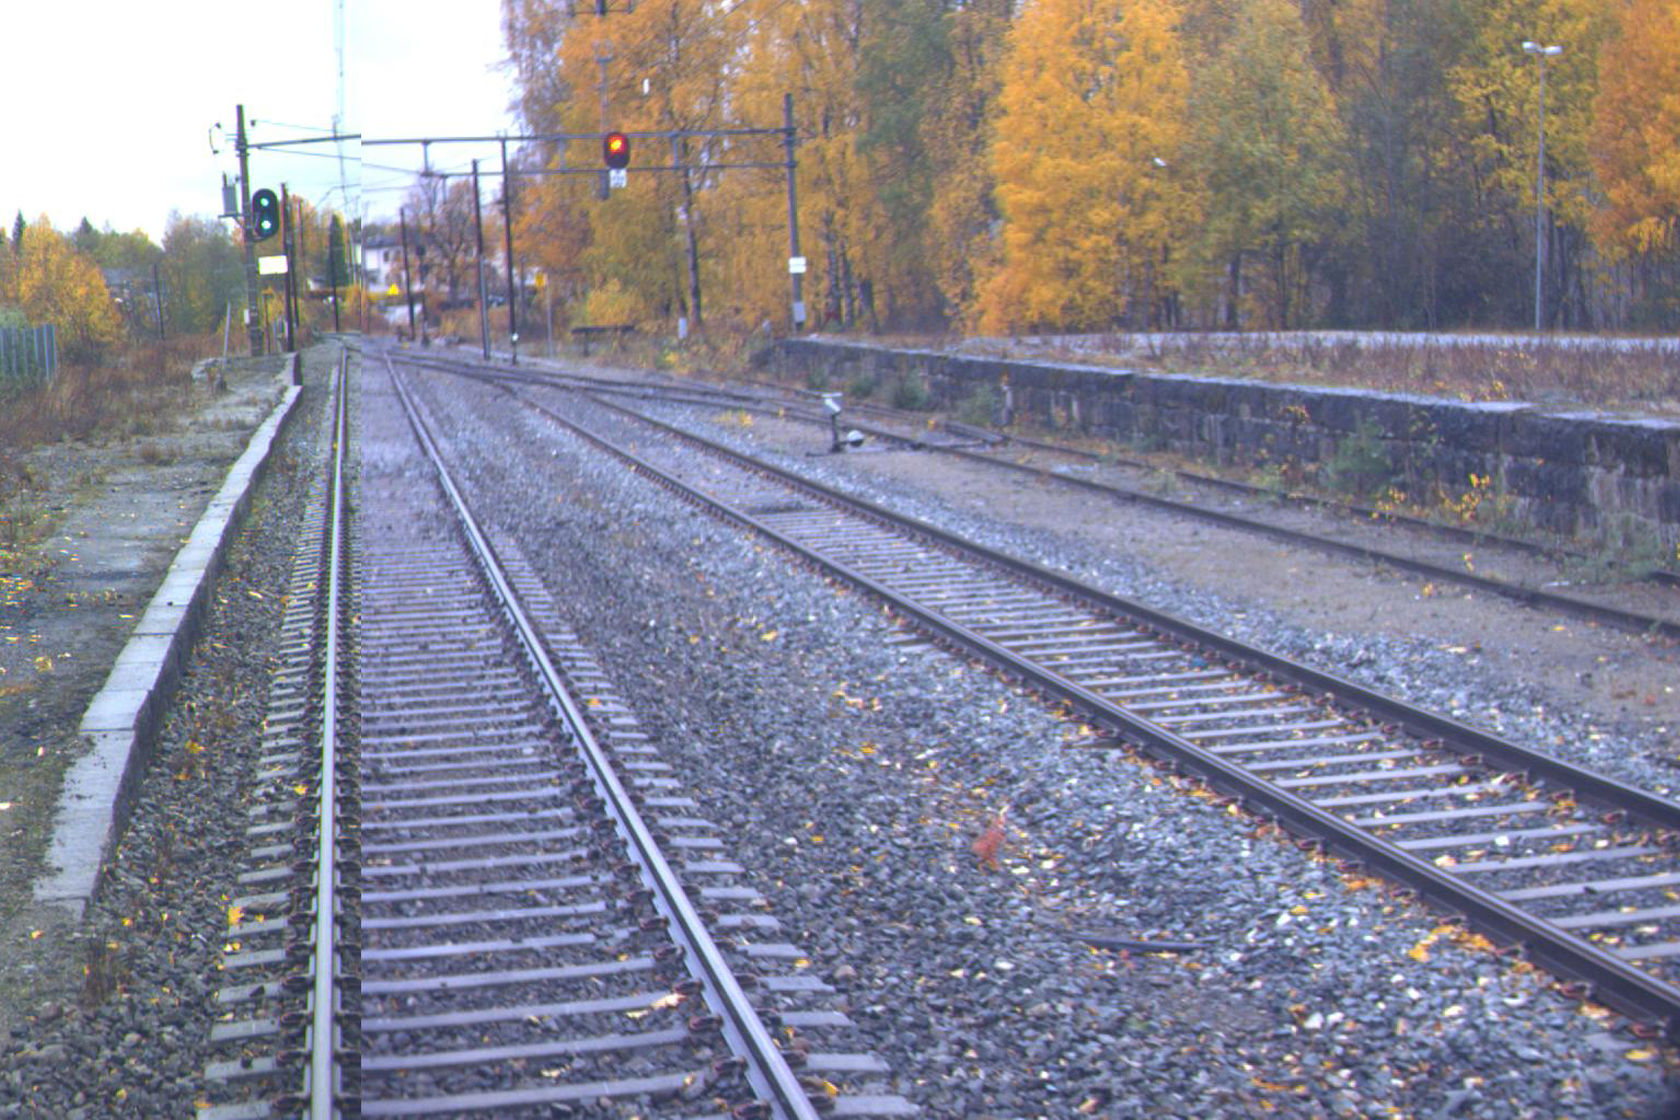 Tracks at Hval station